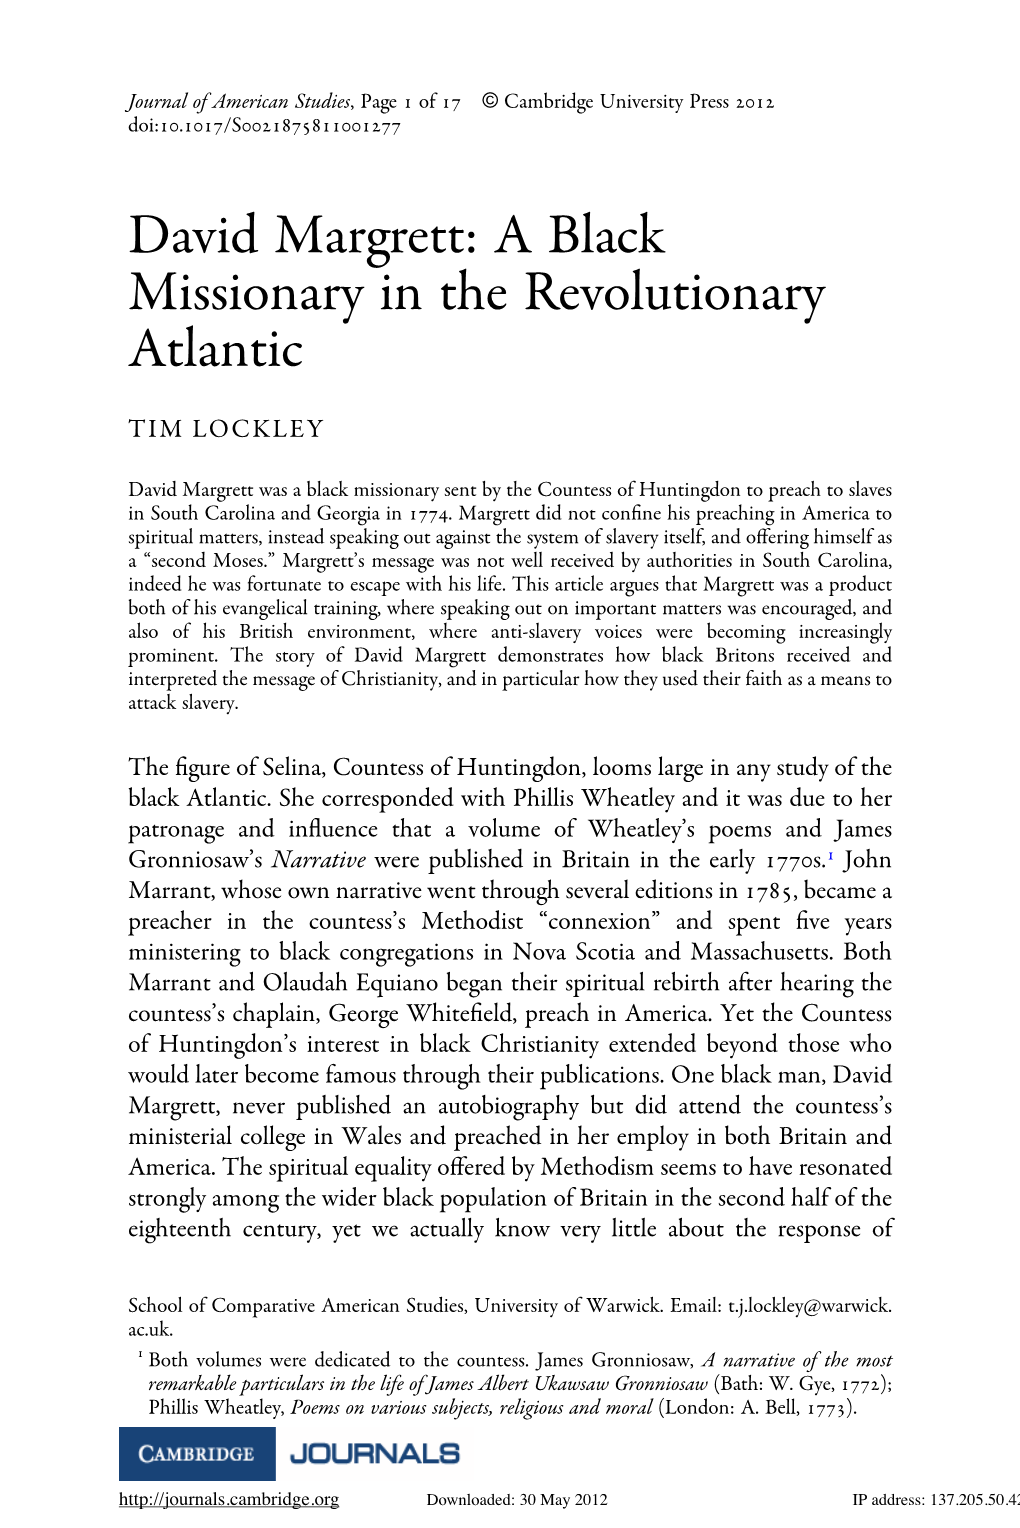 David Margrett: a Black Missionary in the Revolutionary Atlantic